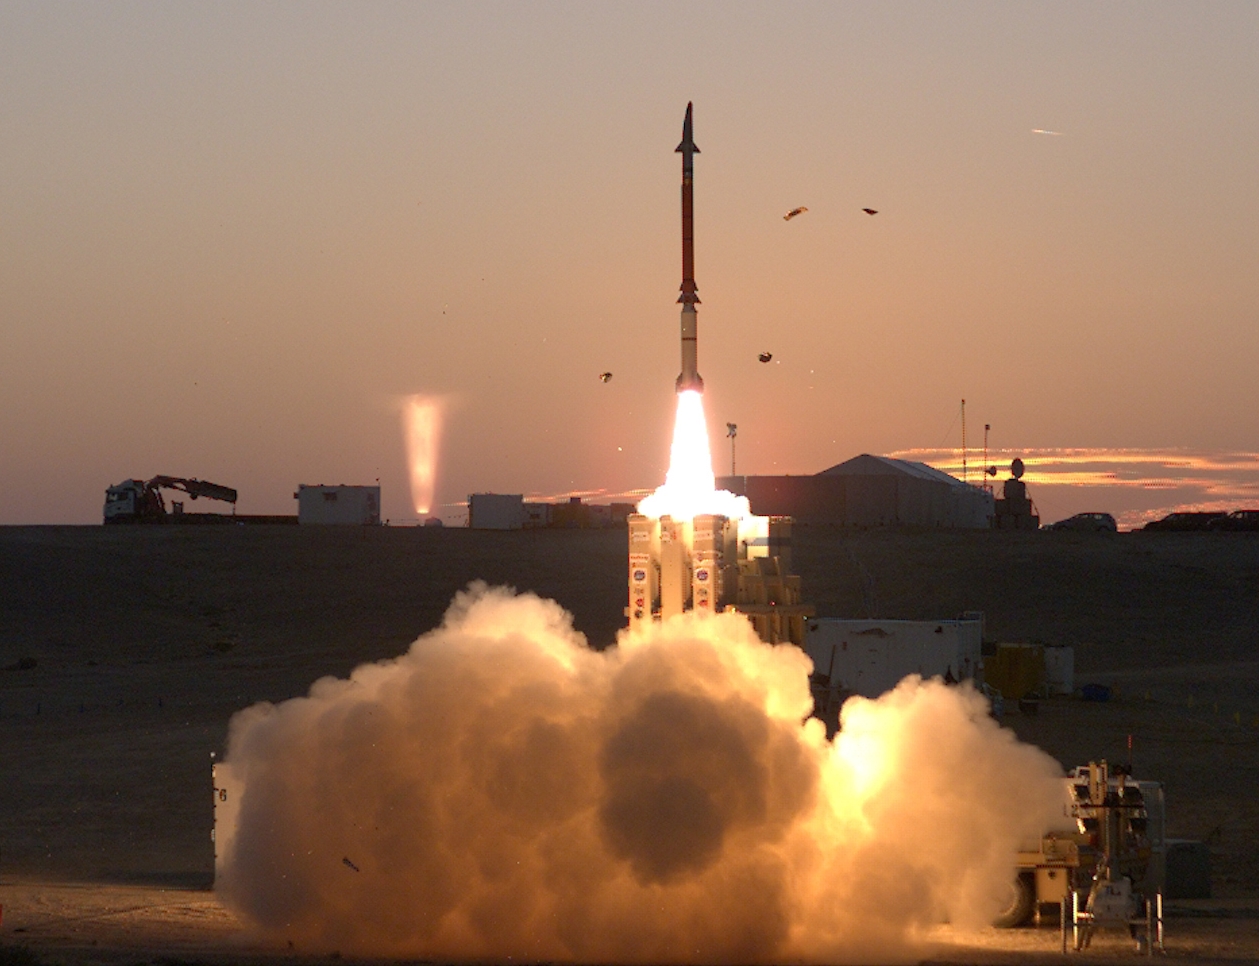 Finland har formaliseret købet af missilforsvarssystemet David's Sling til en værdi af op til 340 millioner dollars.